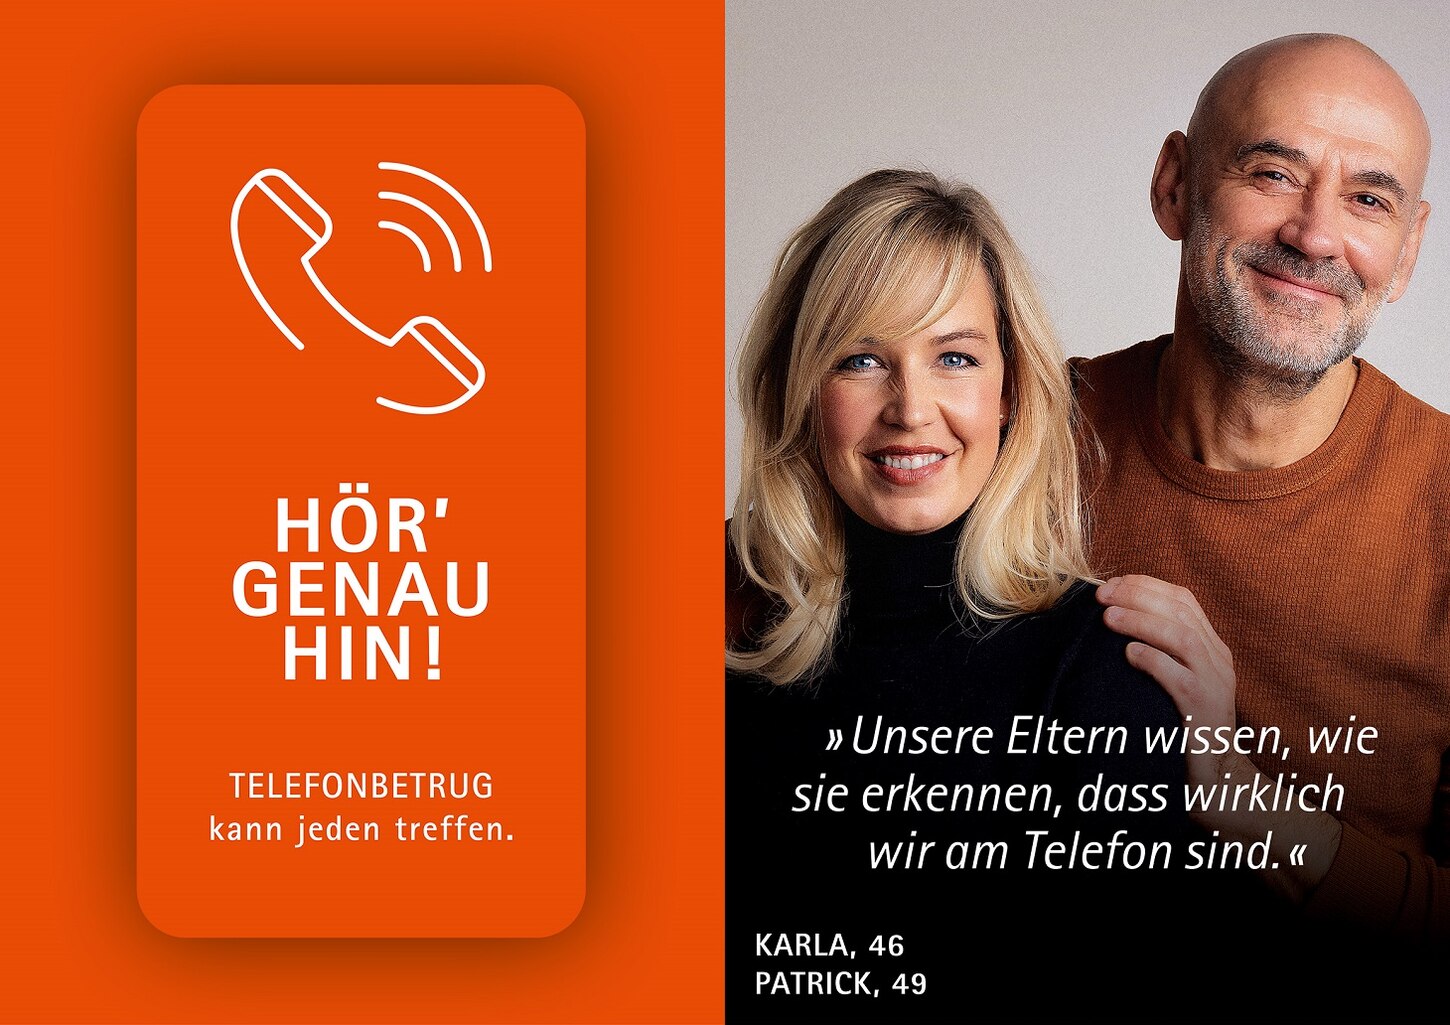 Betrugskampagne mit Paar mit Botschaft: Unsere Eltern wissen, wie sie erkennen, dass wir wirklich am Telefon sind.